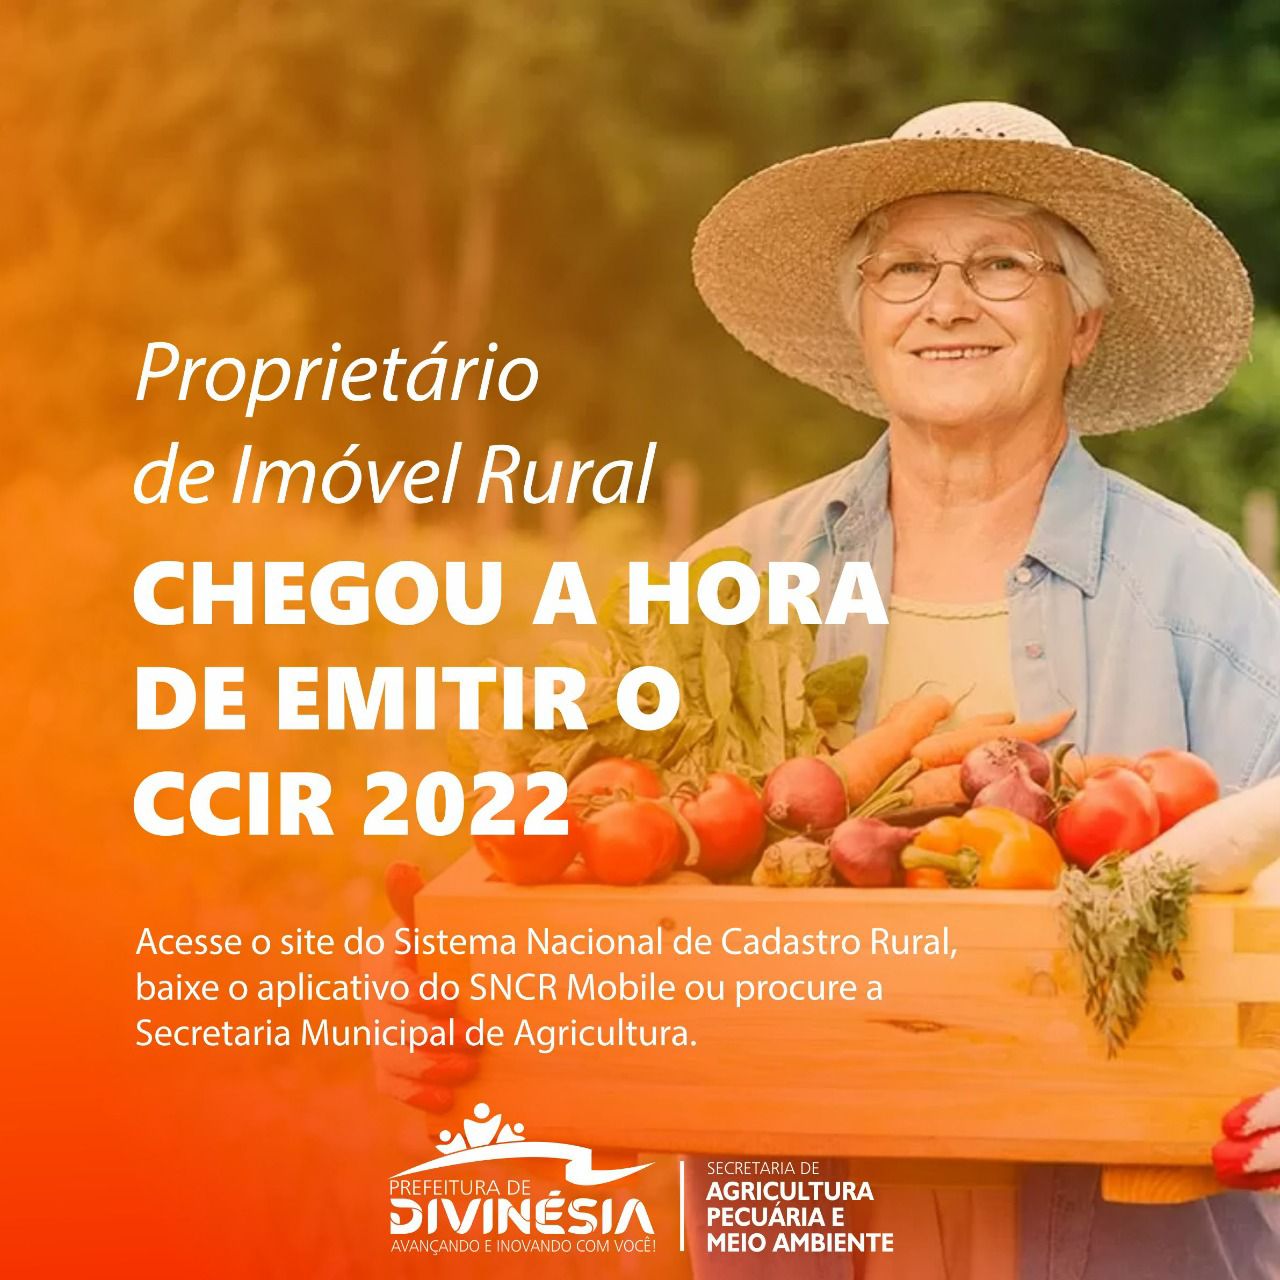 PROPRIETÁRIO DE IMÓVEL RURAL: CHEGOU A HORA DE EMITIR O CCIR 2022!